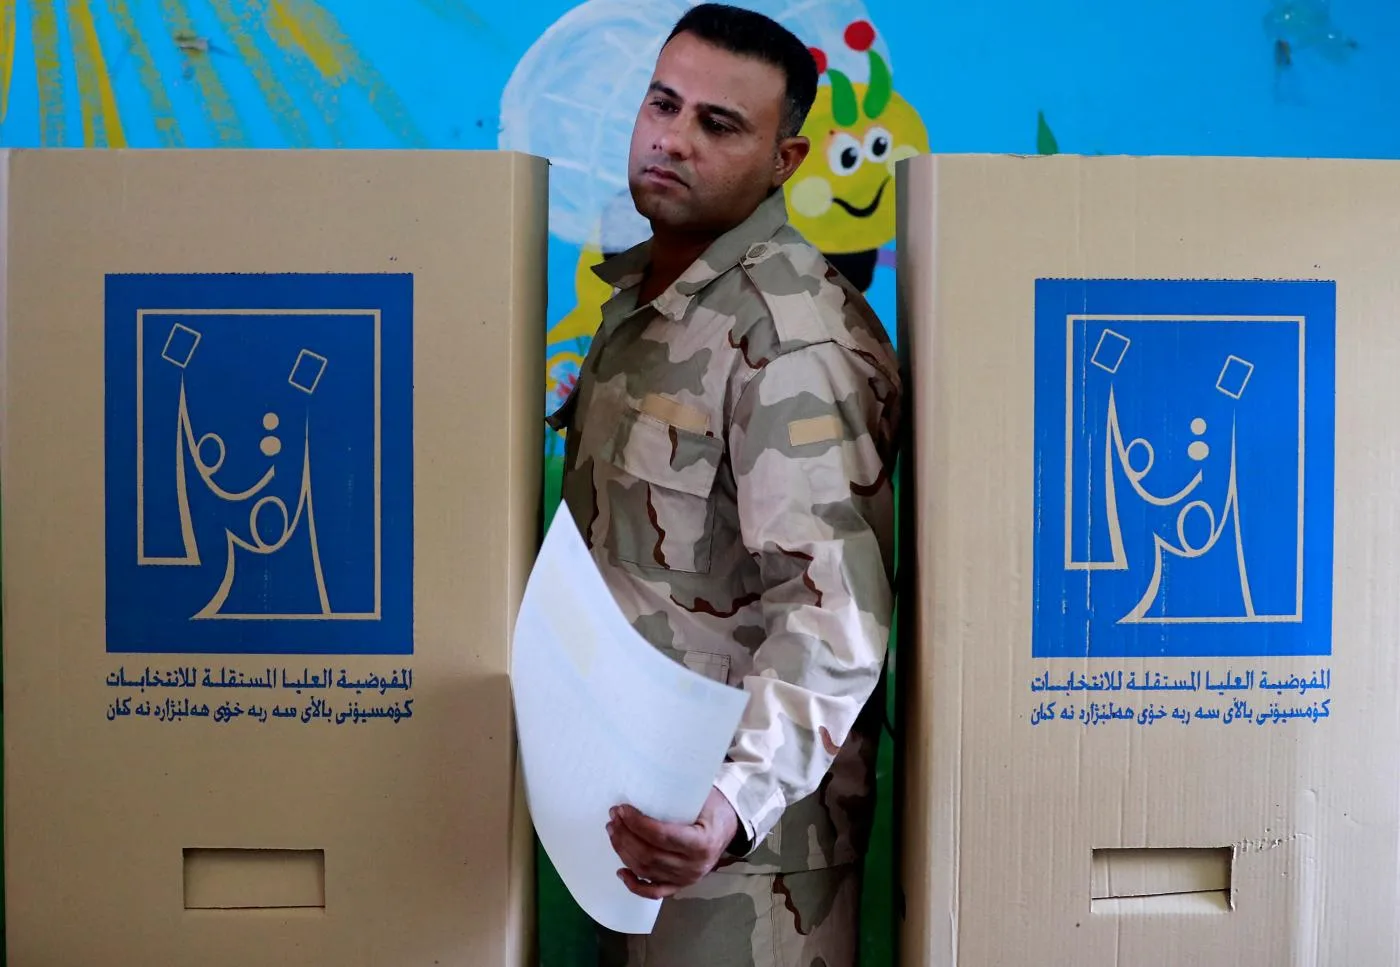 أحد عناصر القوات الأمنية العراقية يصوت في الانتخابات البرلمانية في العاصمة بغداد يوم 8 أكتوبر 2021.